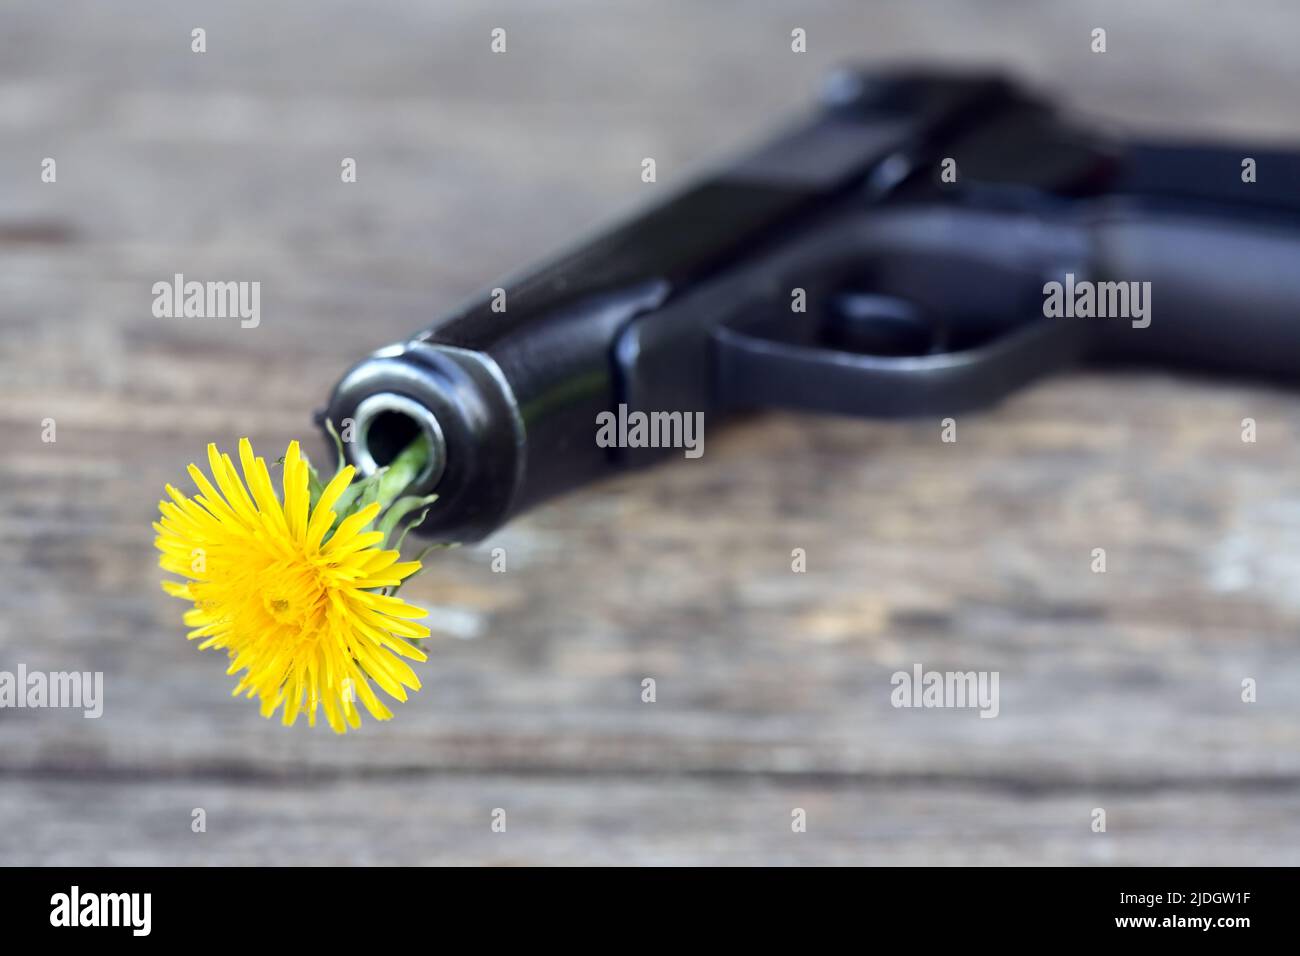 Símbolo del desarme. Agradable diente de león amarillo en el cañón de una pistola Foto de stock